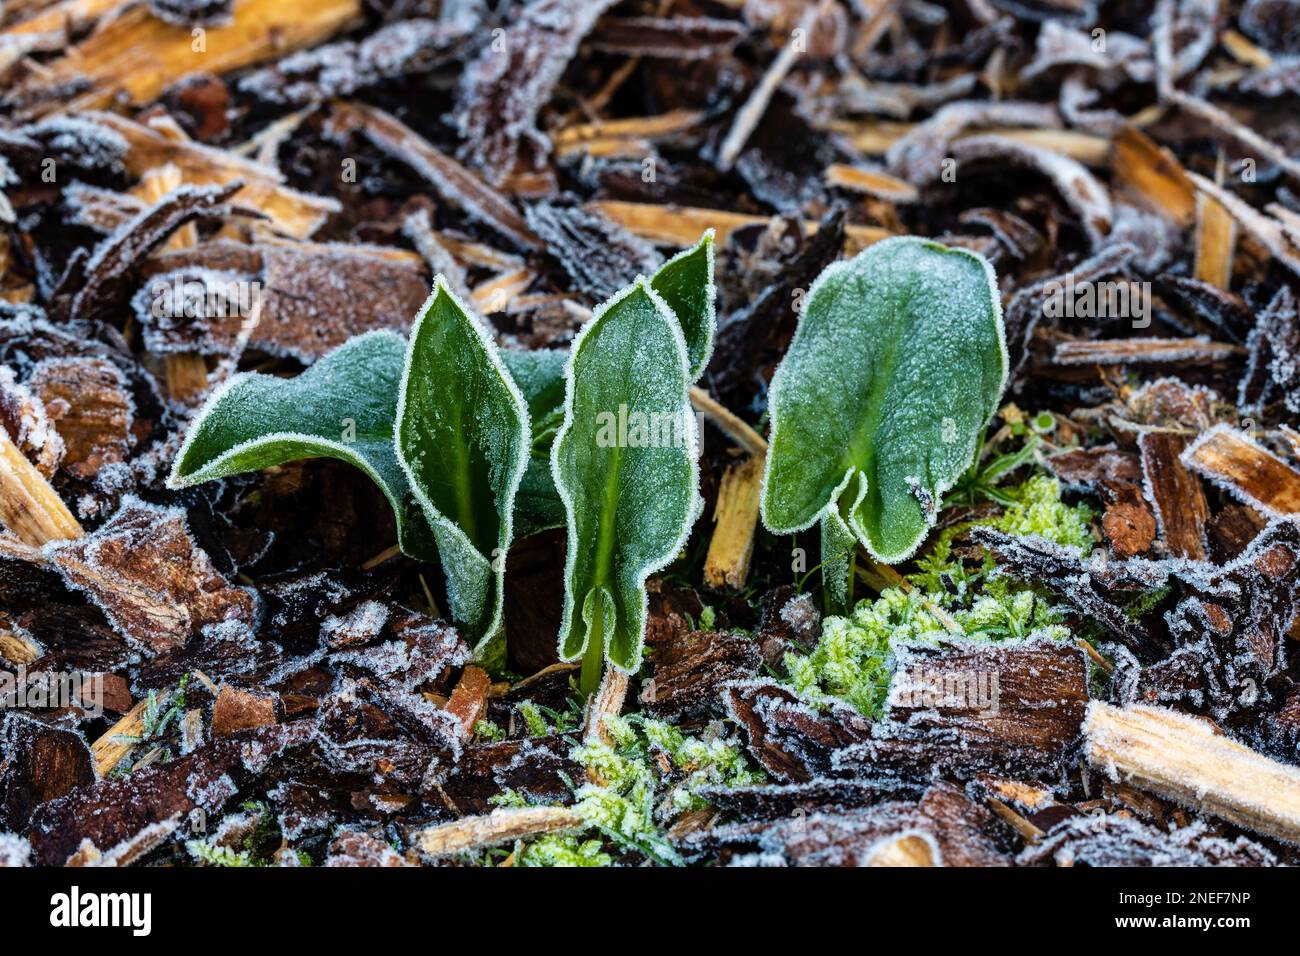 Arum créticum, feuilles émergeant en janvier et couvertes de gel. Famille des Araceae Banque D'Images